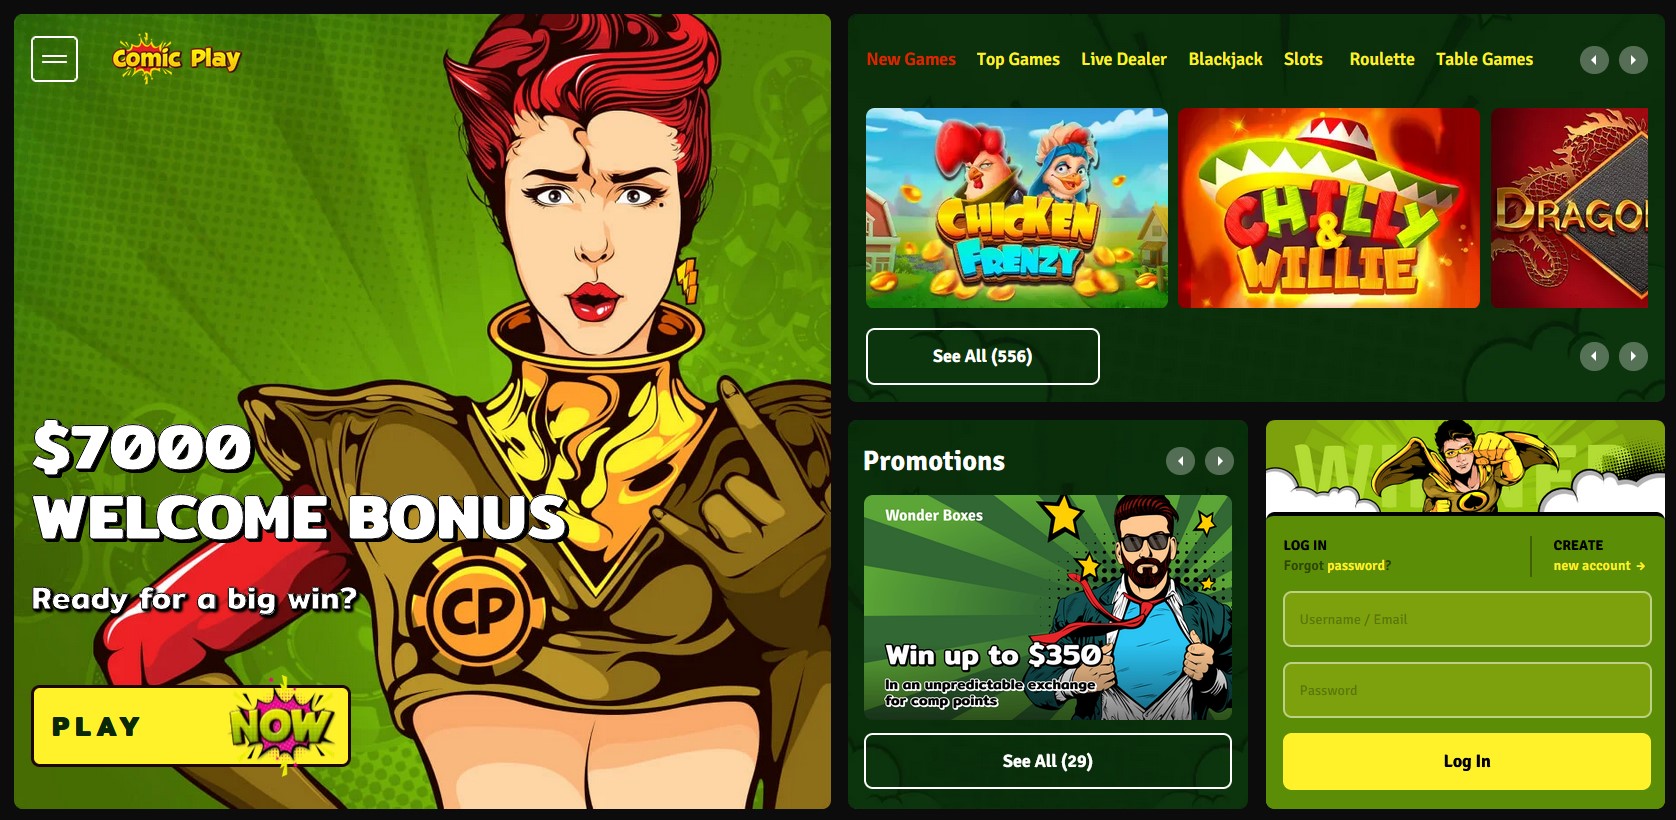 Tangkapan layar beranda situs web komik play casino